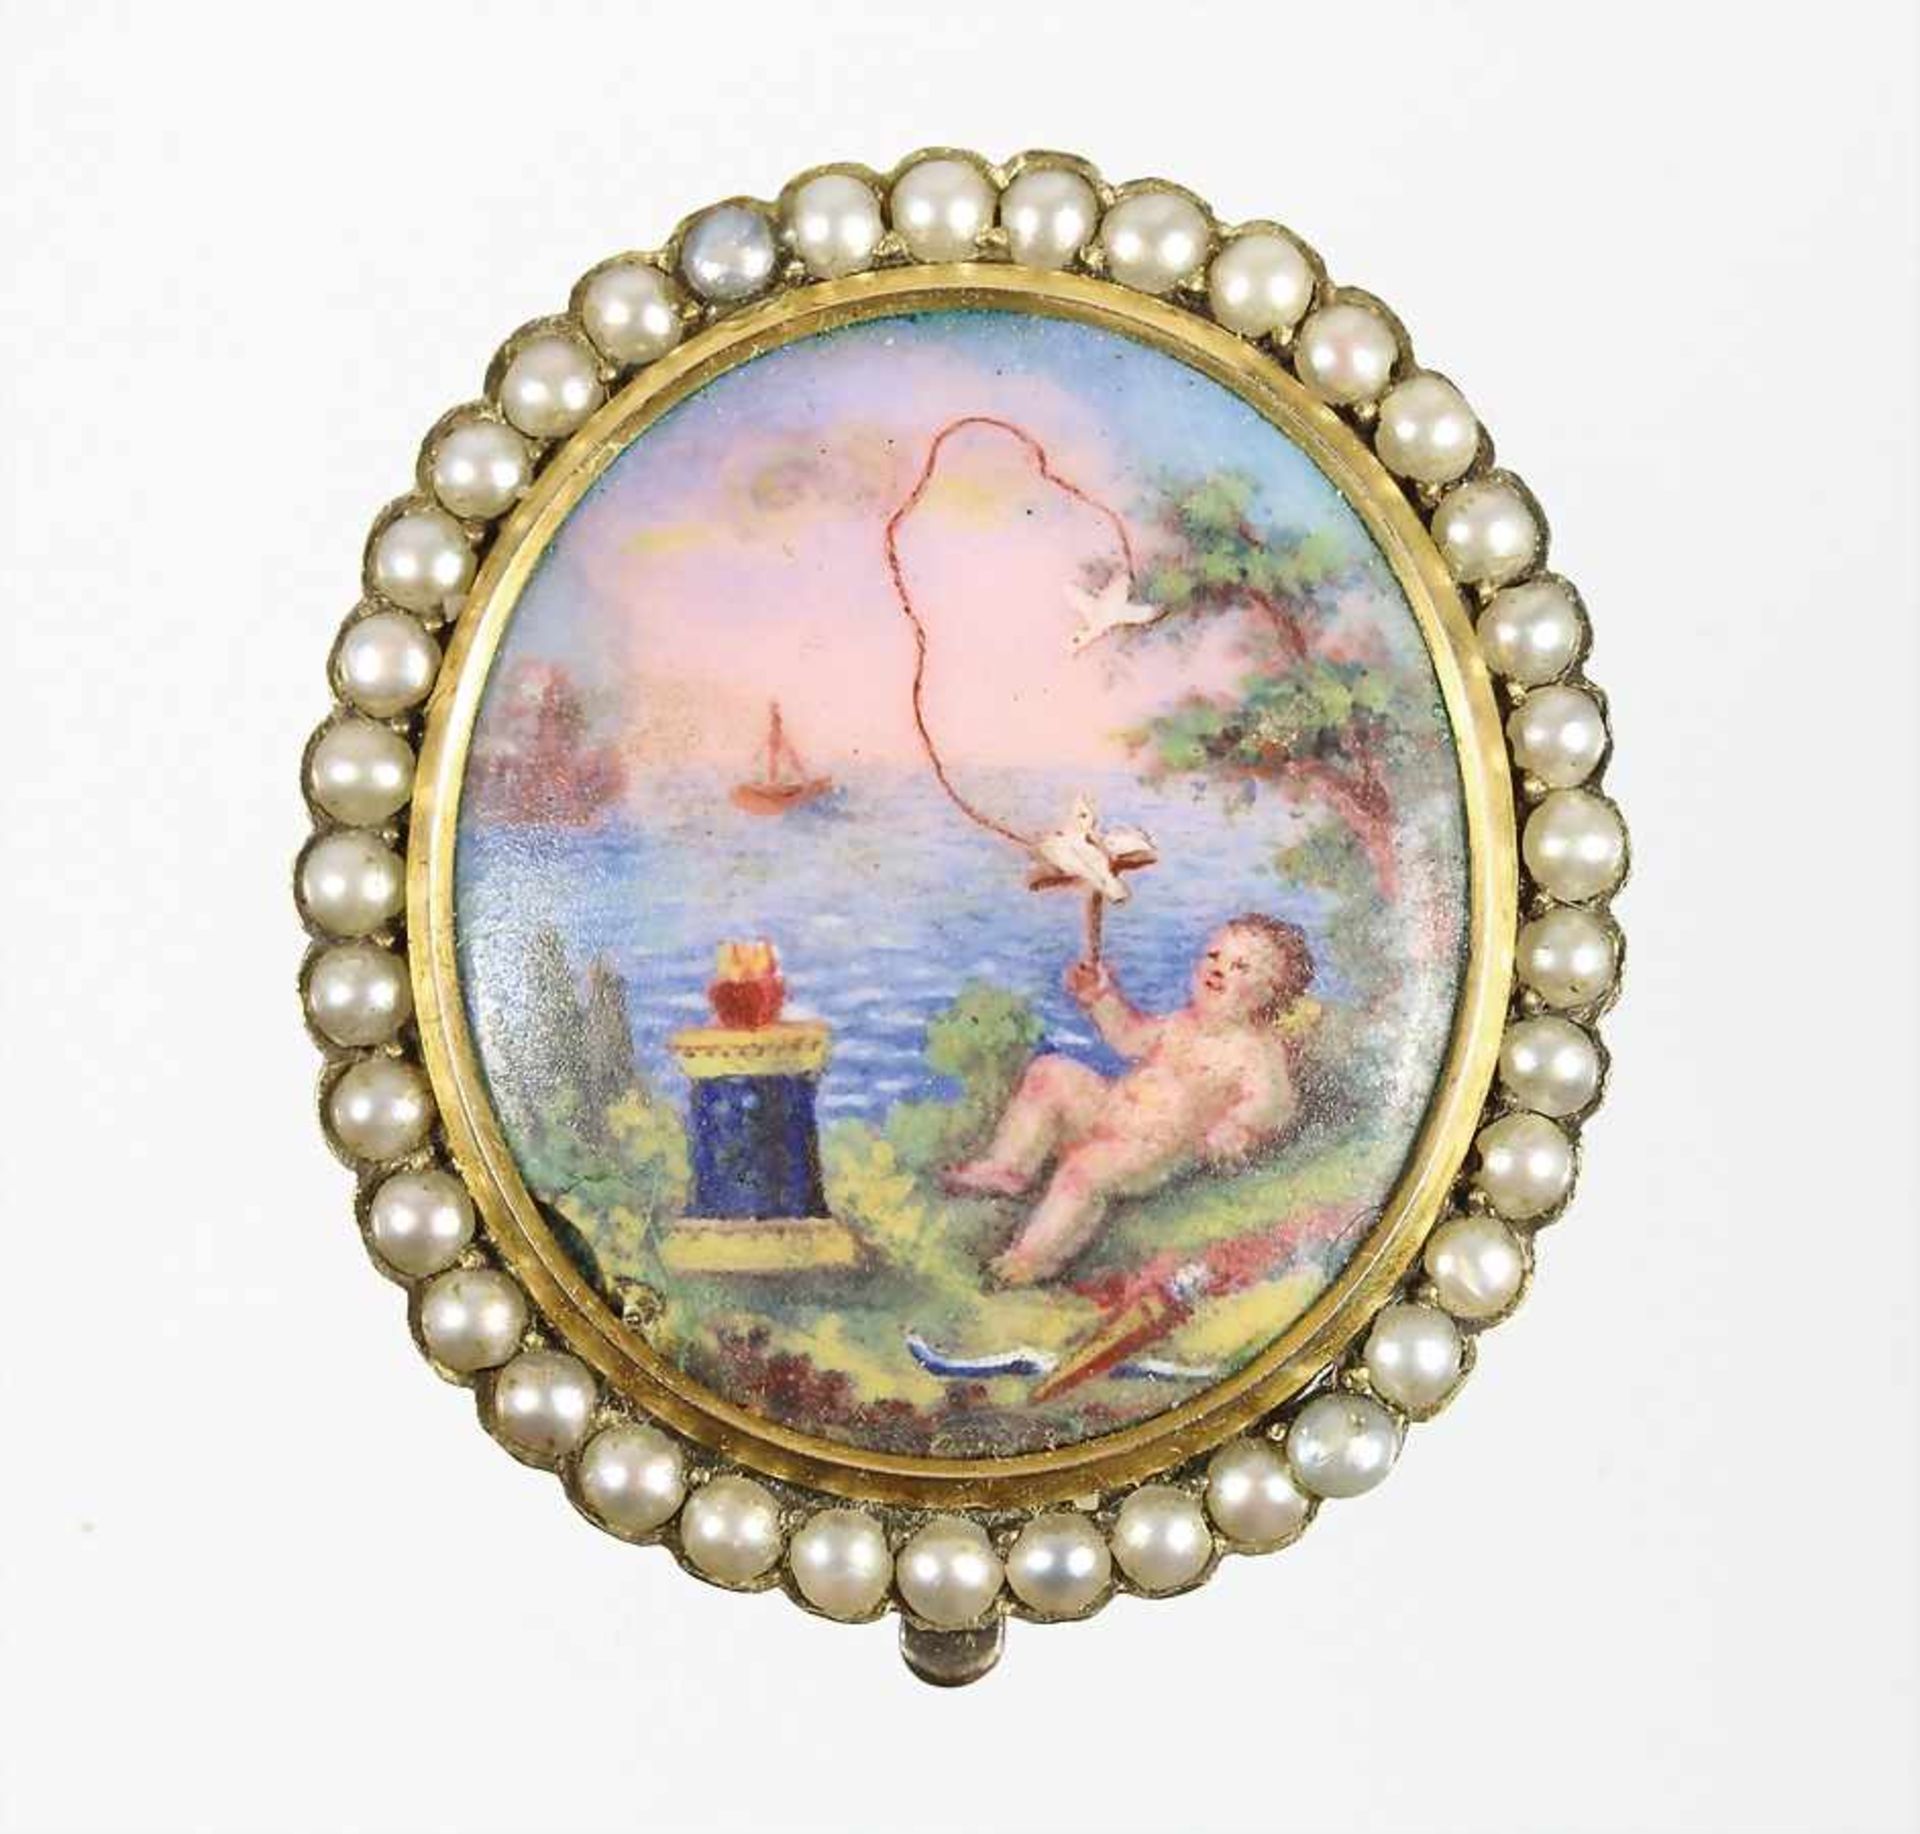 Anhänger um 1840/50 (für Samtband), Silber mit Resten alter Vergoldung, 37 Stck. 1/2 Perlen umrahmen